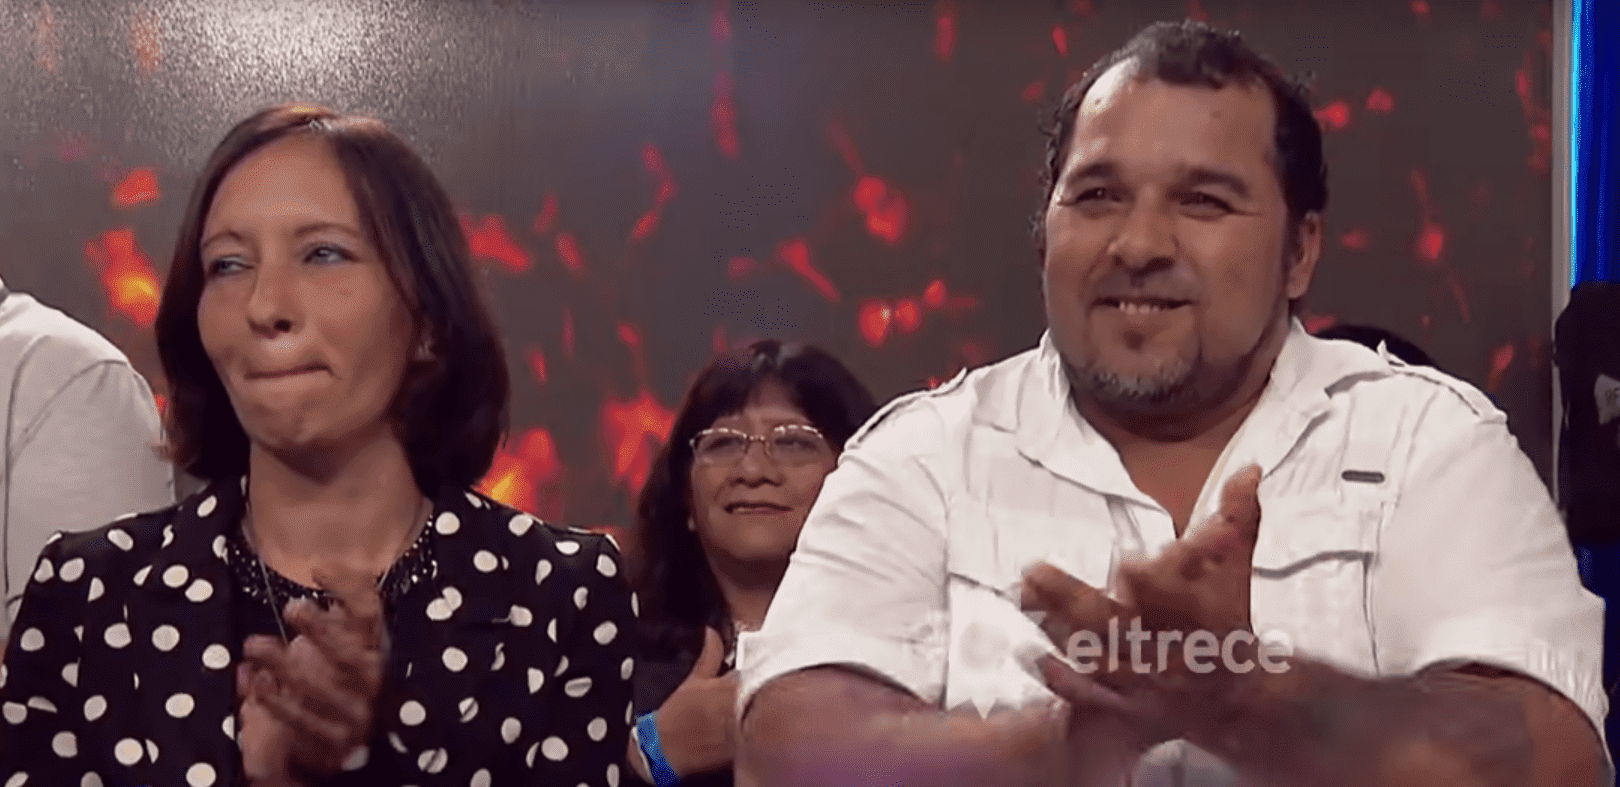 Eltern von Carlos Milanesi während seines Auftritts | Quelle: YouTube/El Trece